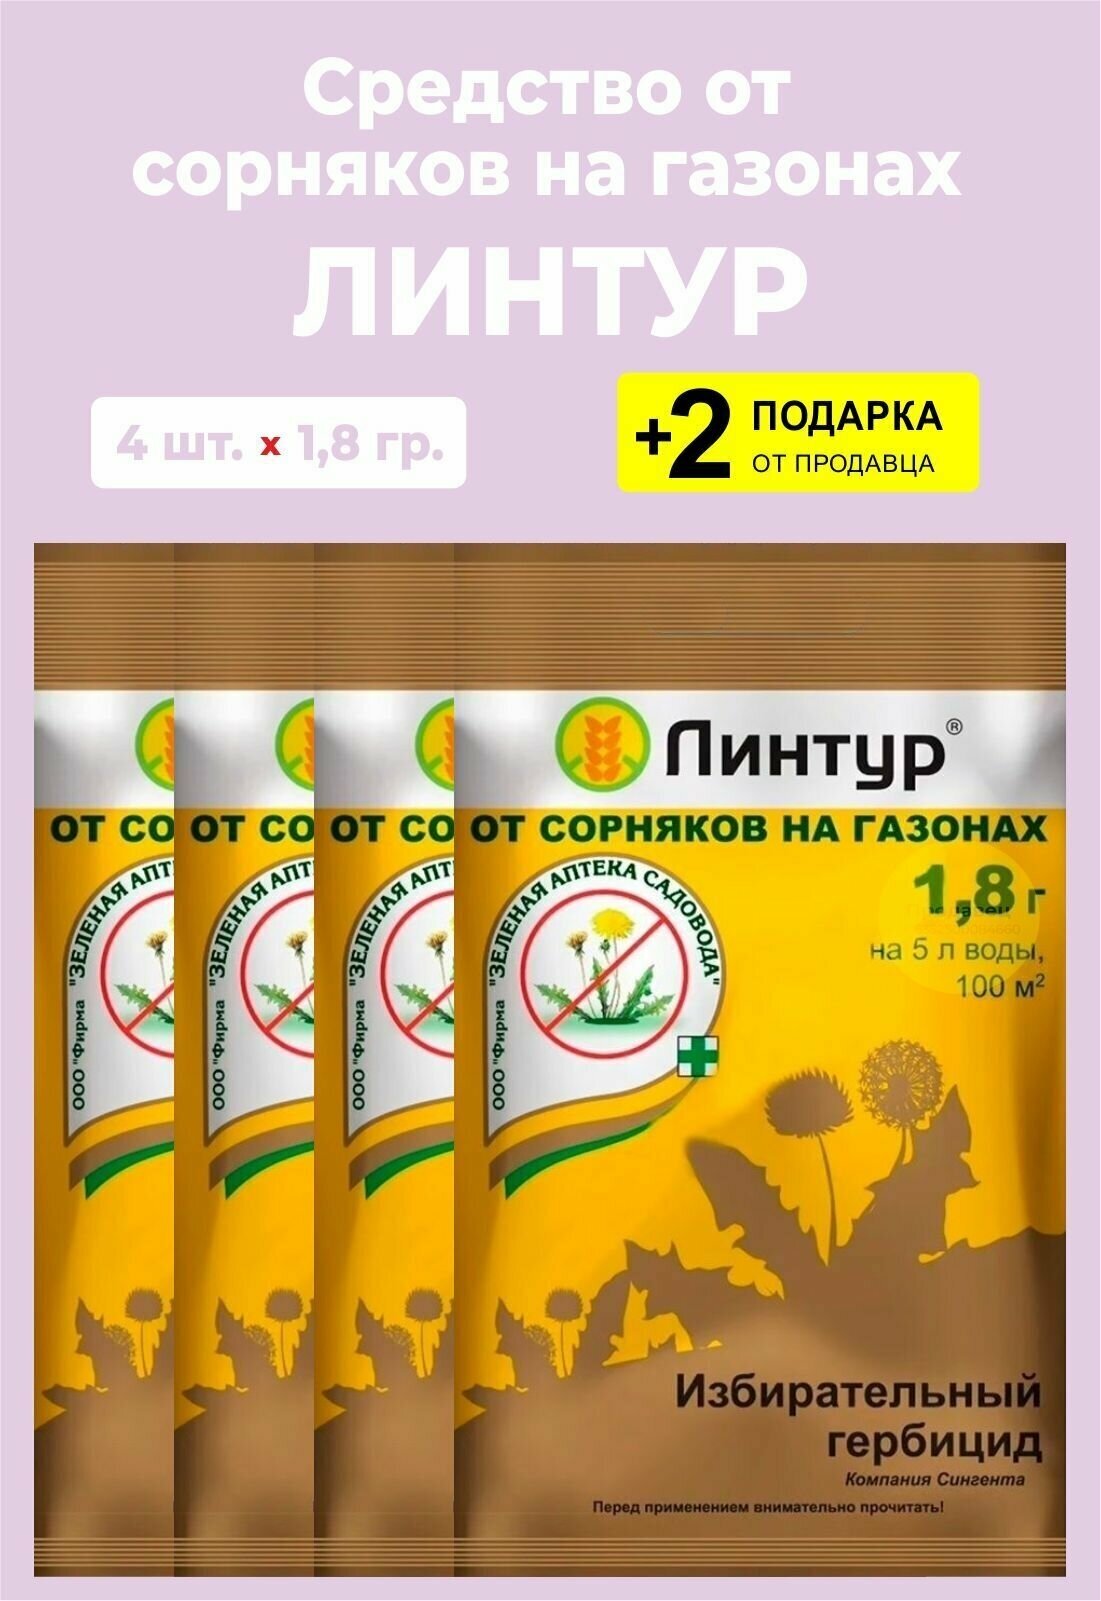 Средство "Линтур" от сорняков на газонах, 1,8 гр., 4 упаковки + 2 Подарка